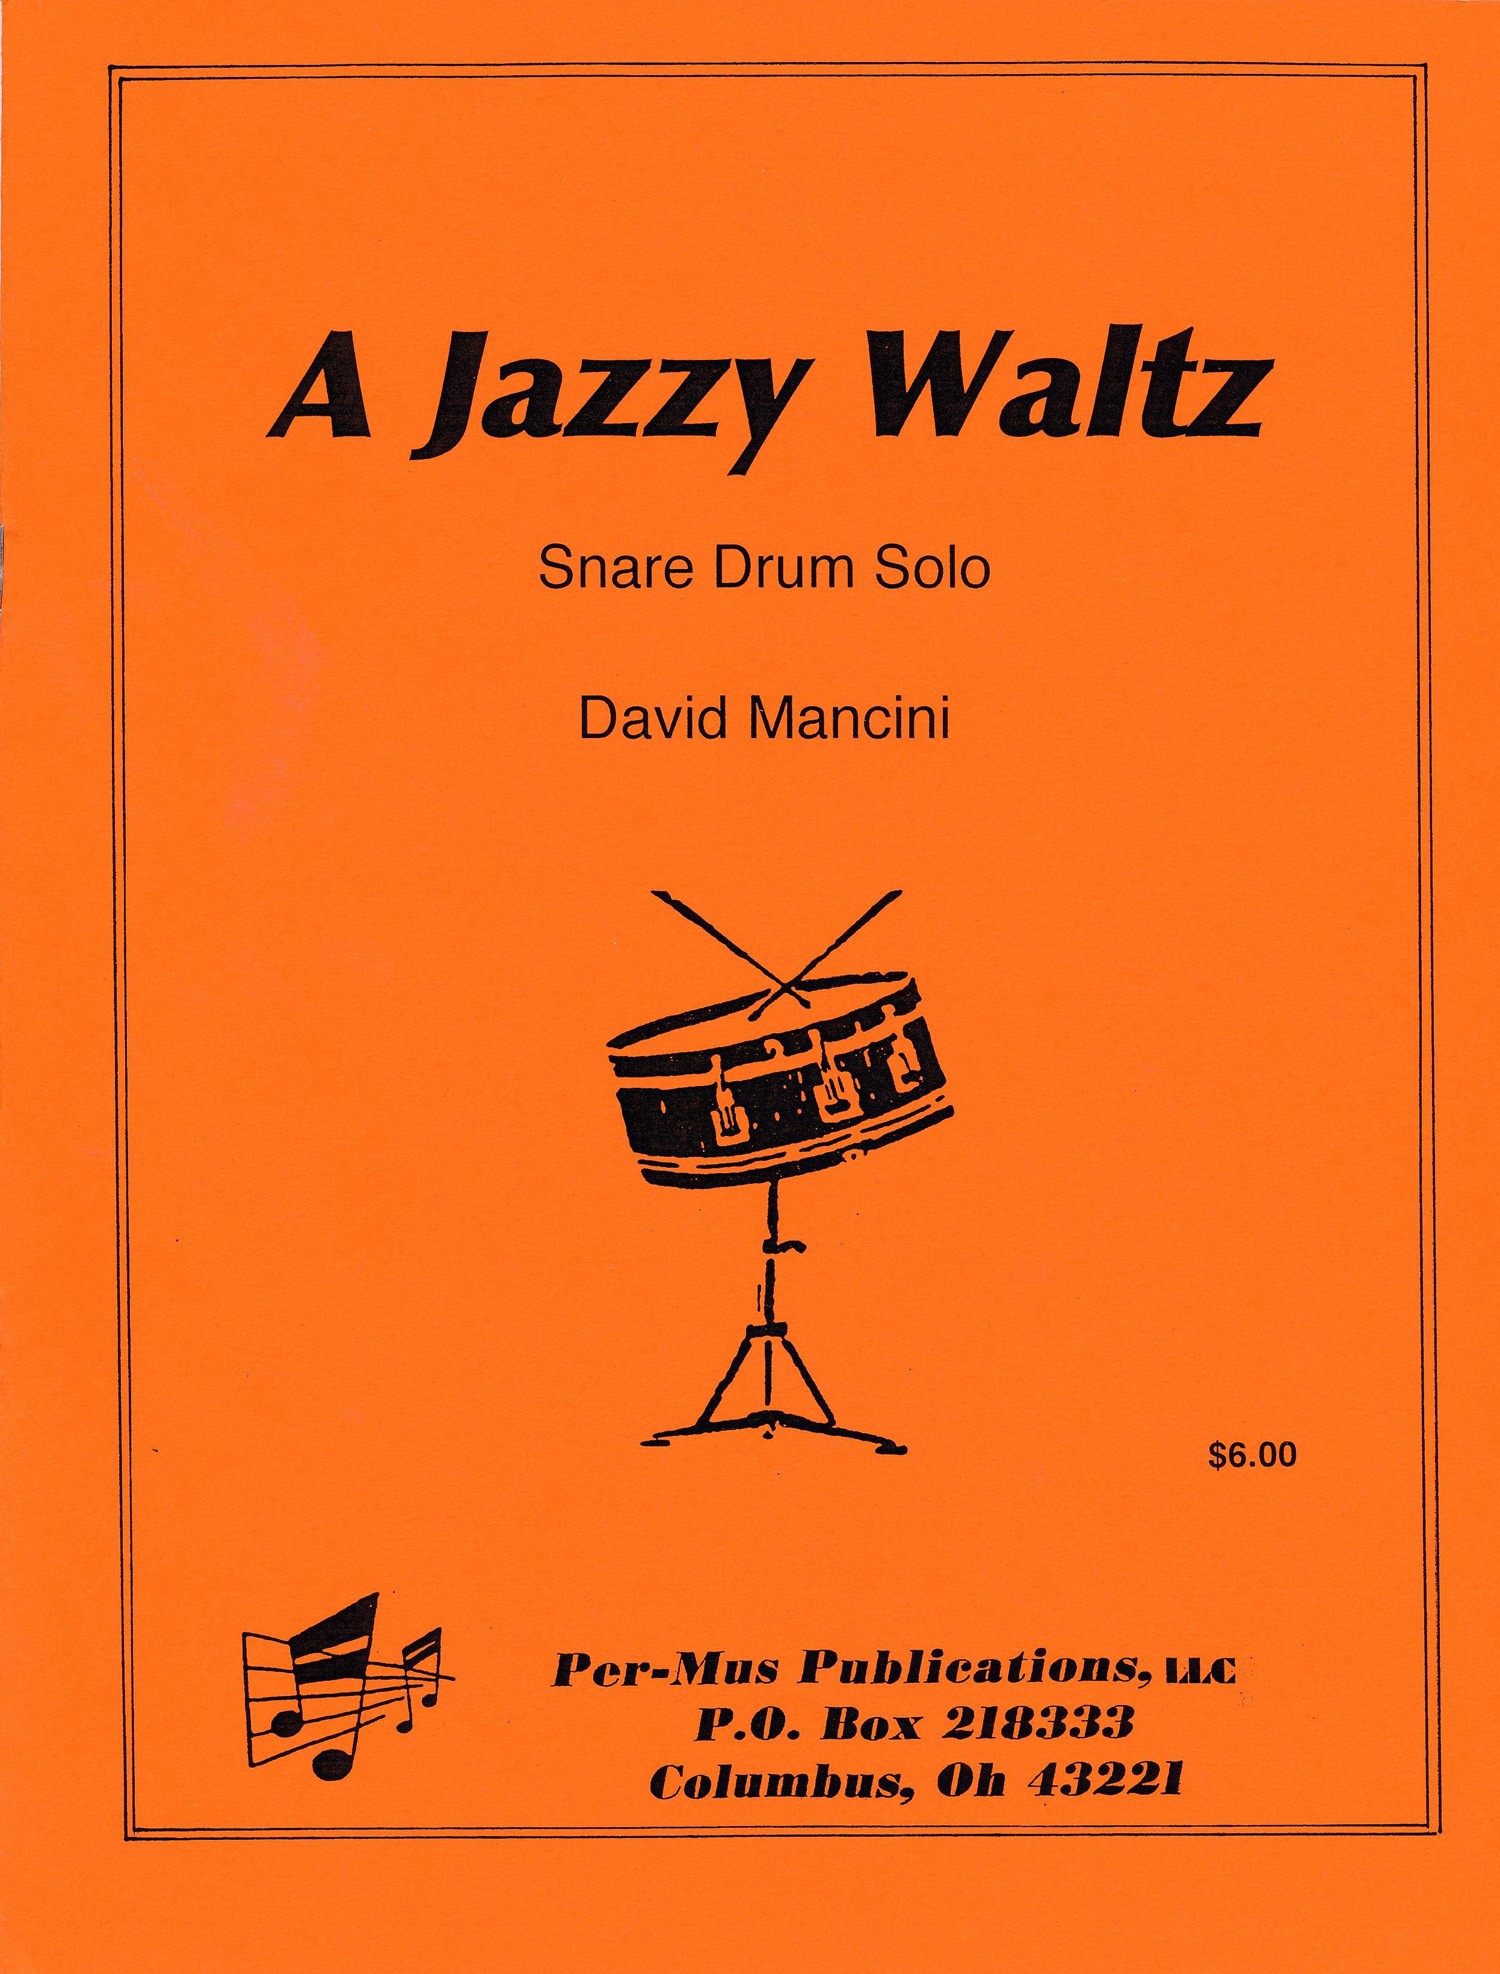 A Jazzy Waltz by David Mancini